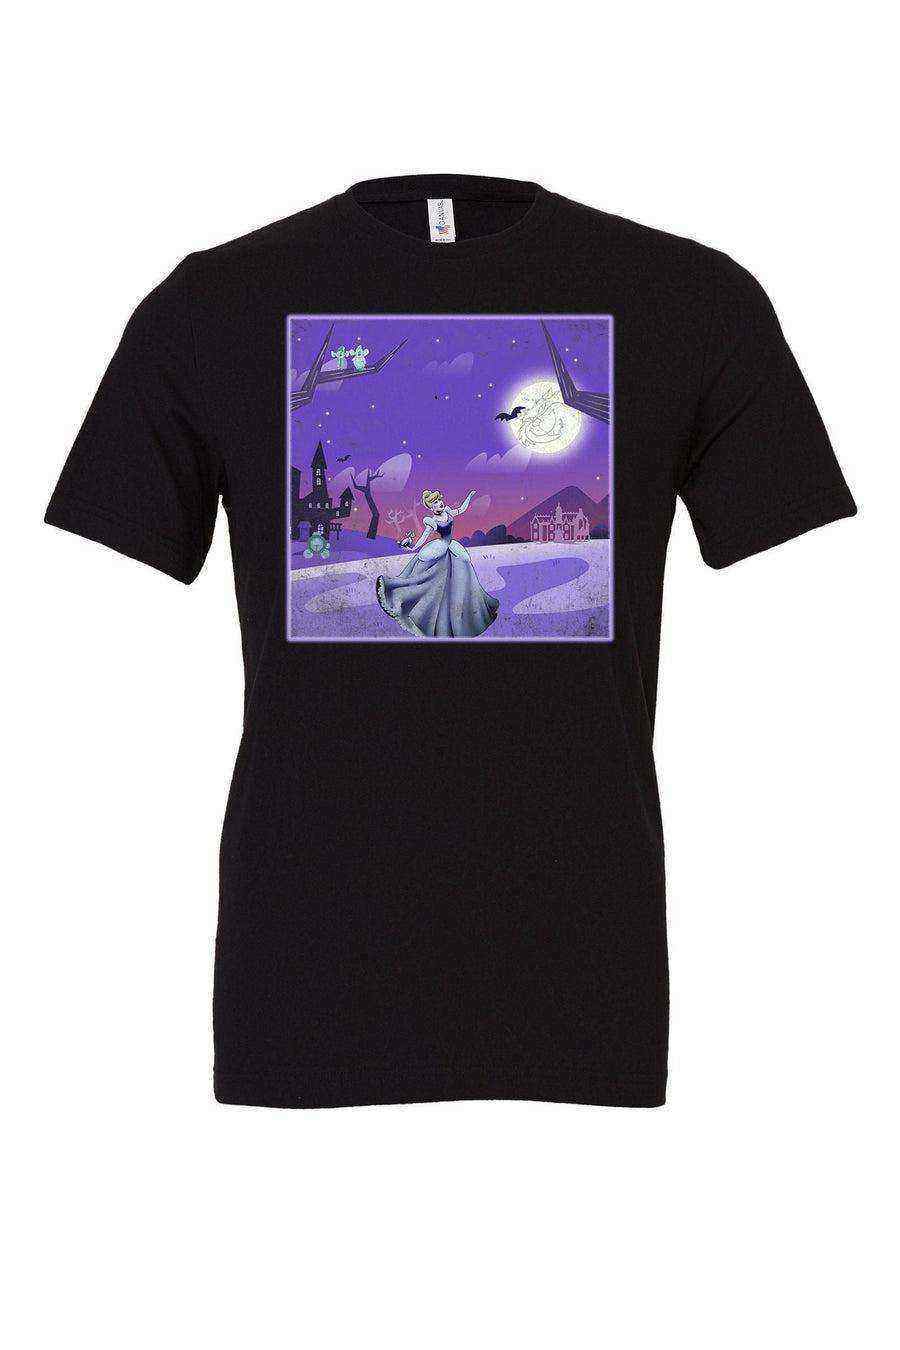 Nightmare Princess Shirt | Haunted Mansion Shirts - Dylan's Tees